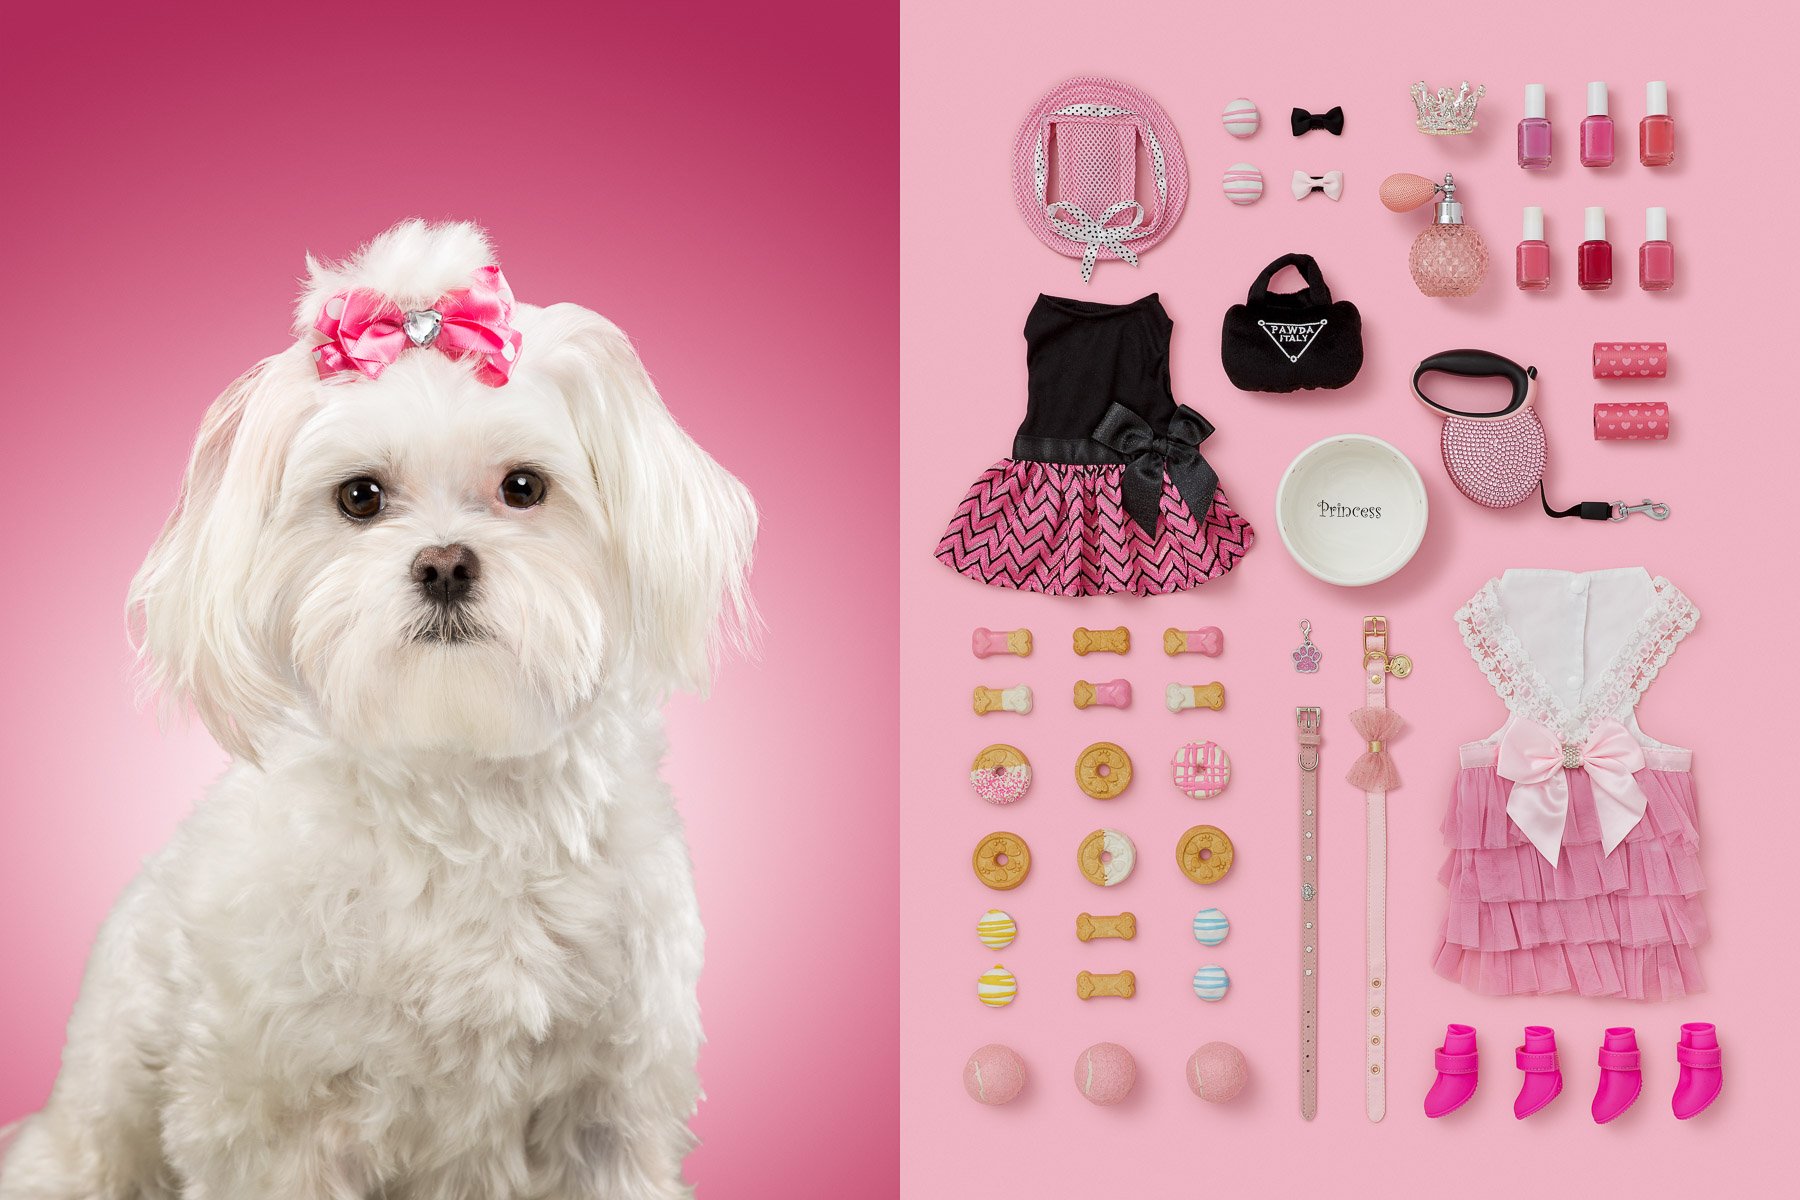 Princess-maltese-series-dog-portraits-knolling-pink-items-princess-animal-photographer.jpg